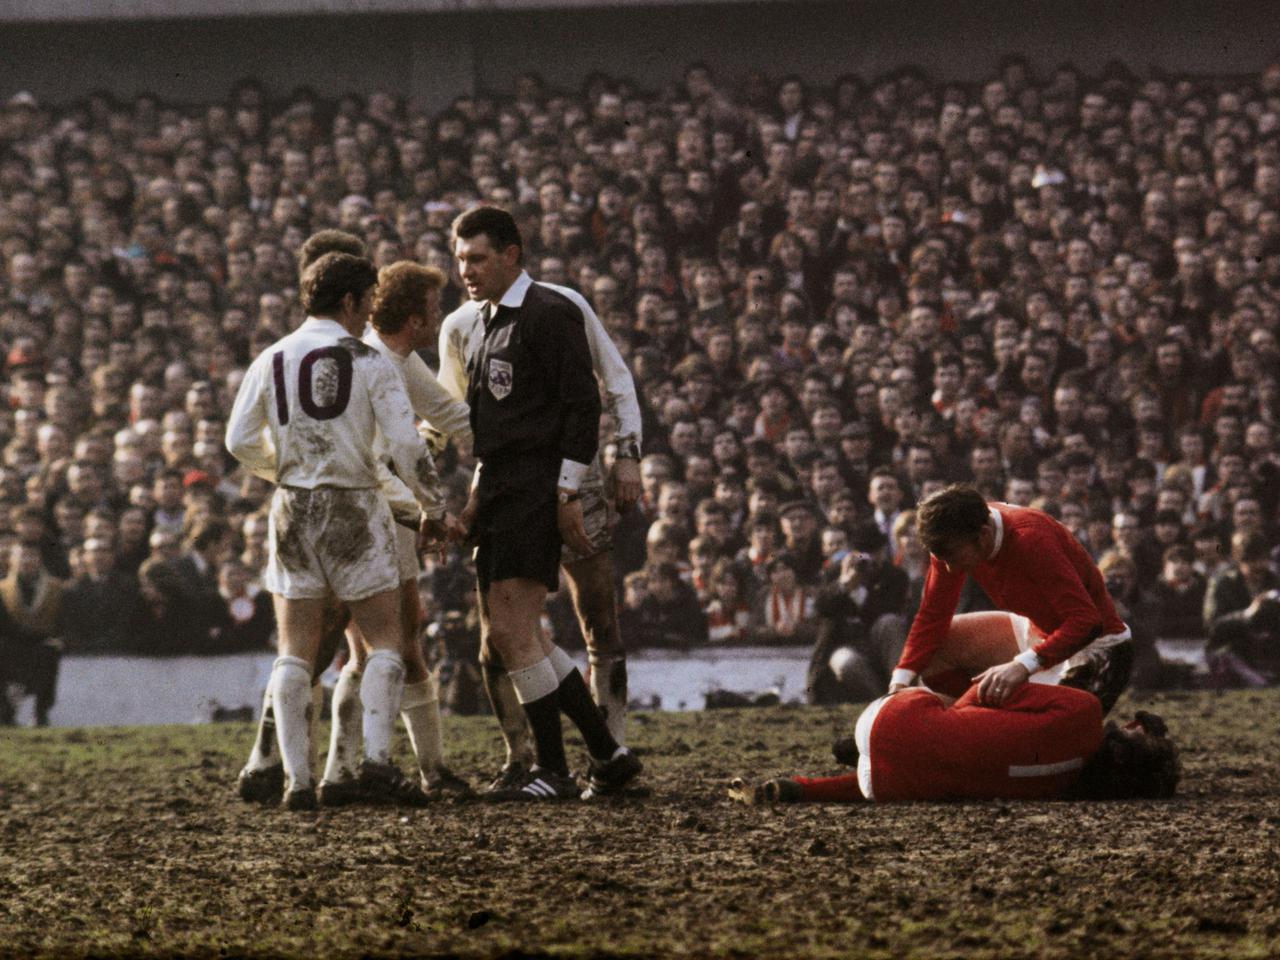 Kể từ năm1965, Leeds và Man United đã nuôi mối hận thù giữa những kỳ phùng địch thủ cùng địa bàn